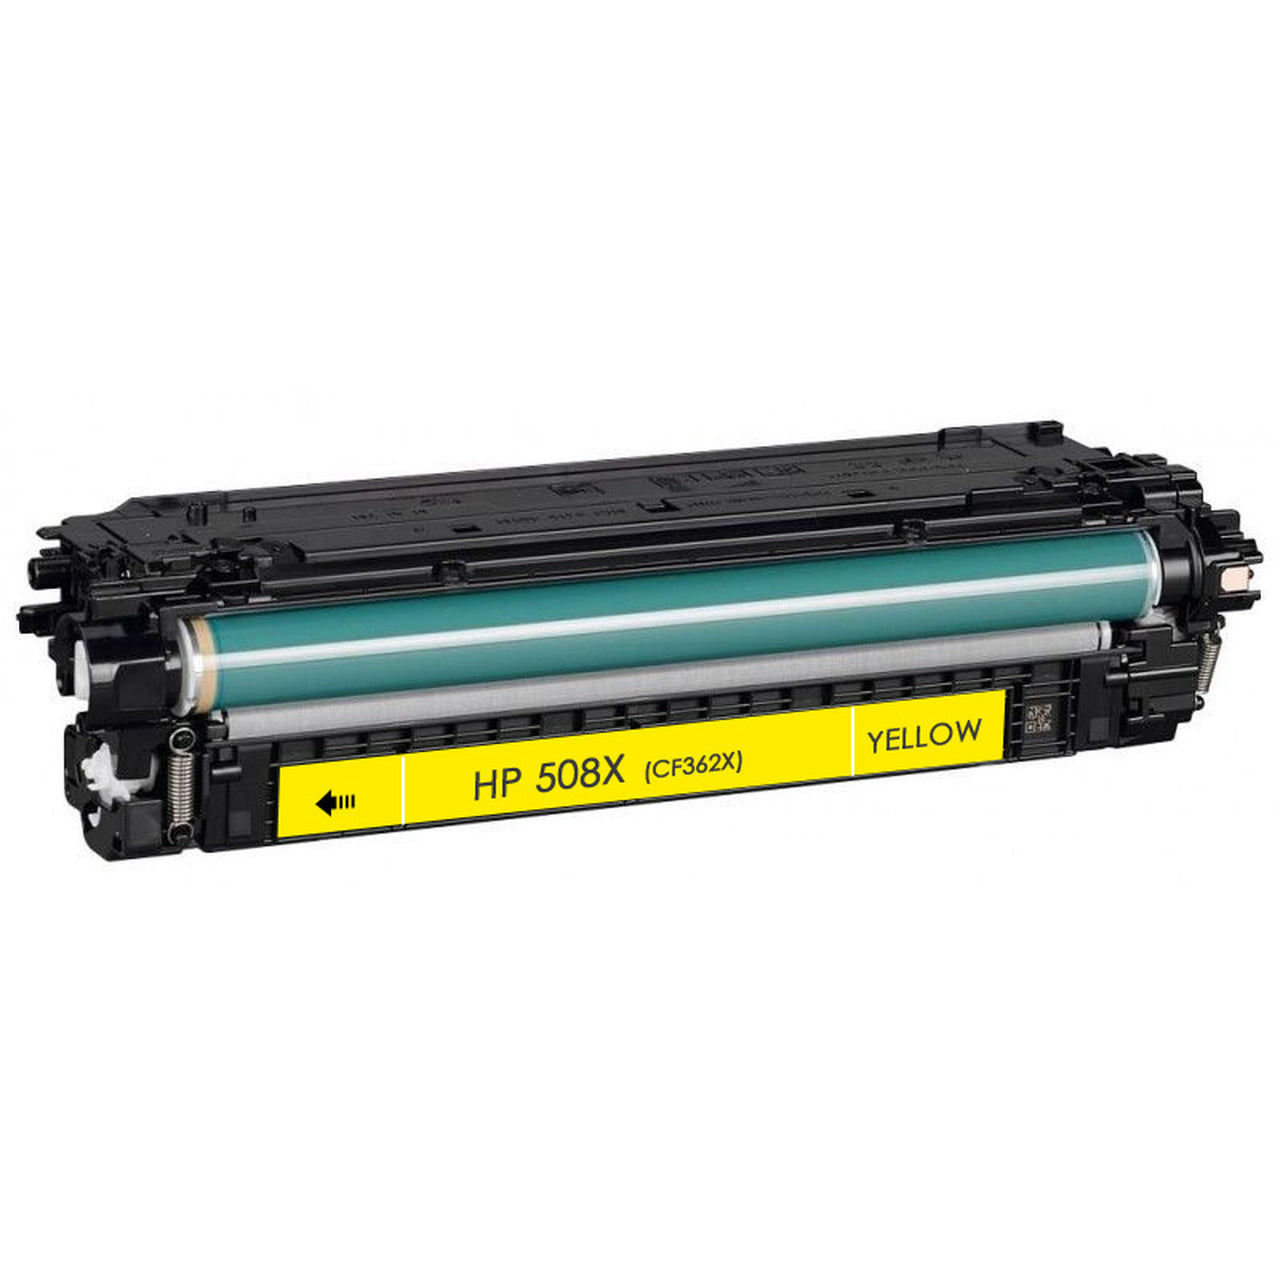 HP LASERJET Print Cartridge Yellow (CF362X M552 M553 NEW)